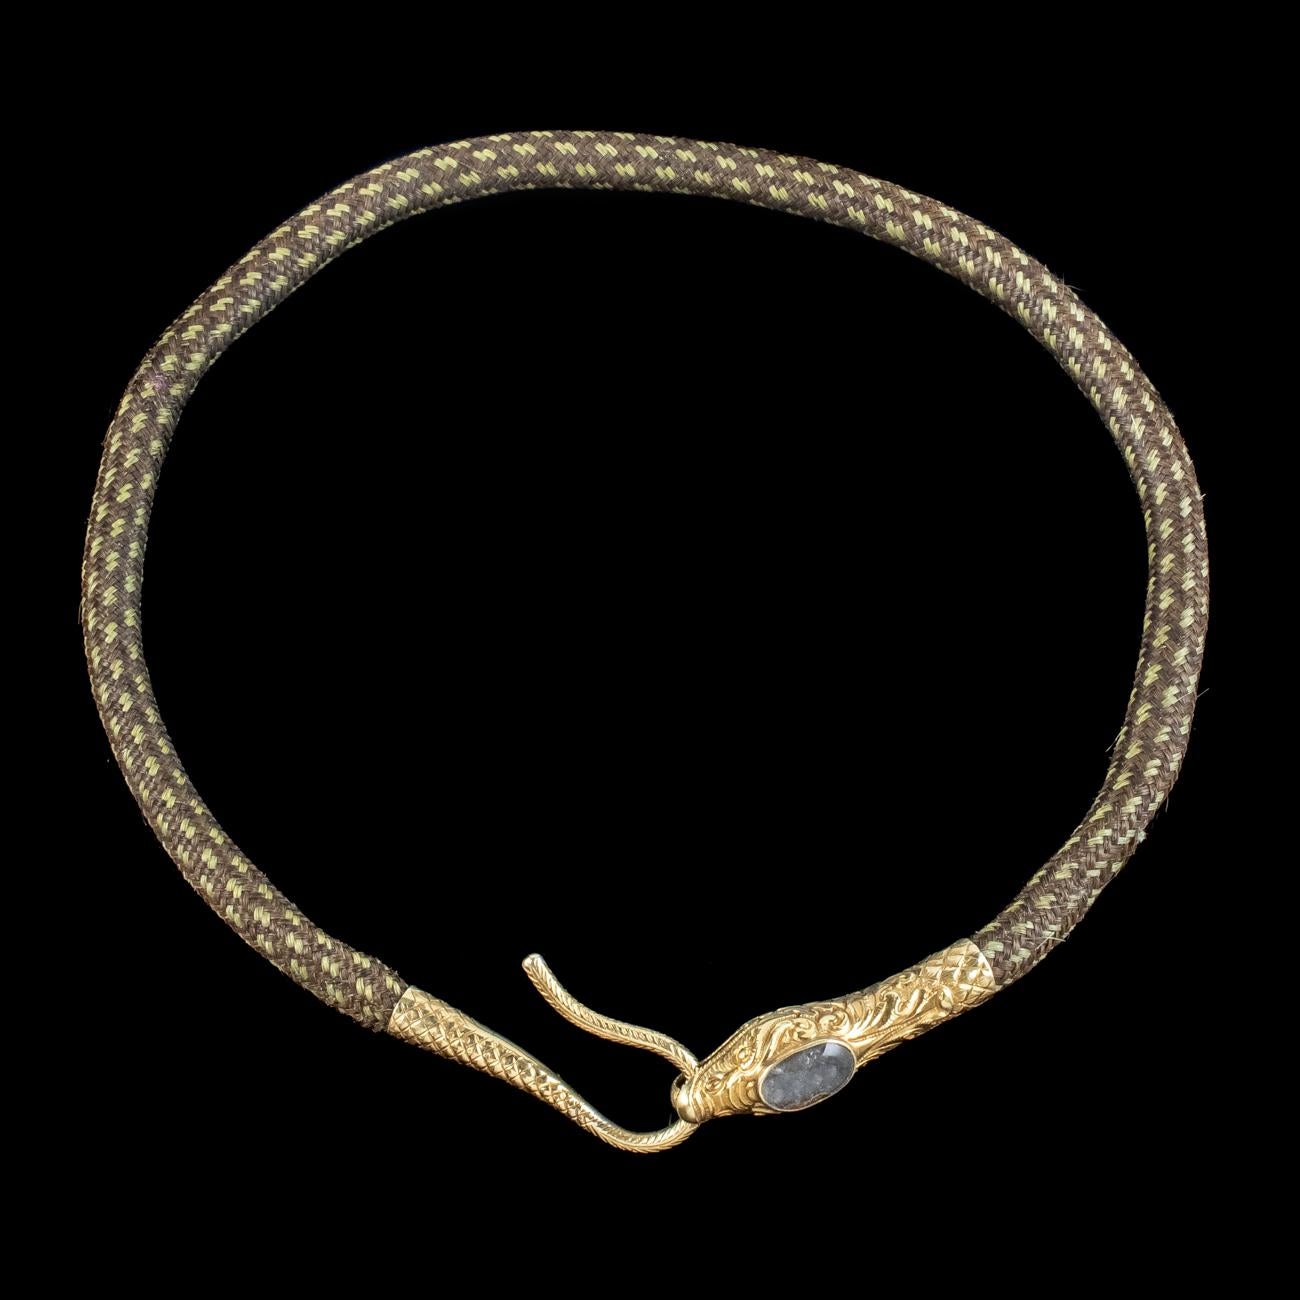 Un exquis collier de serpent géorgien du début du 19e siècle, composé de trois tons différents de cheveux bruns magnifiquement tressés pour créer une bande épaisse.

La pièce est terminée par une fabuleuse tête et queue de serpent en or 18ct qui